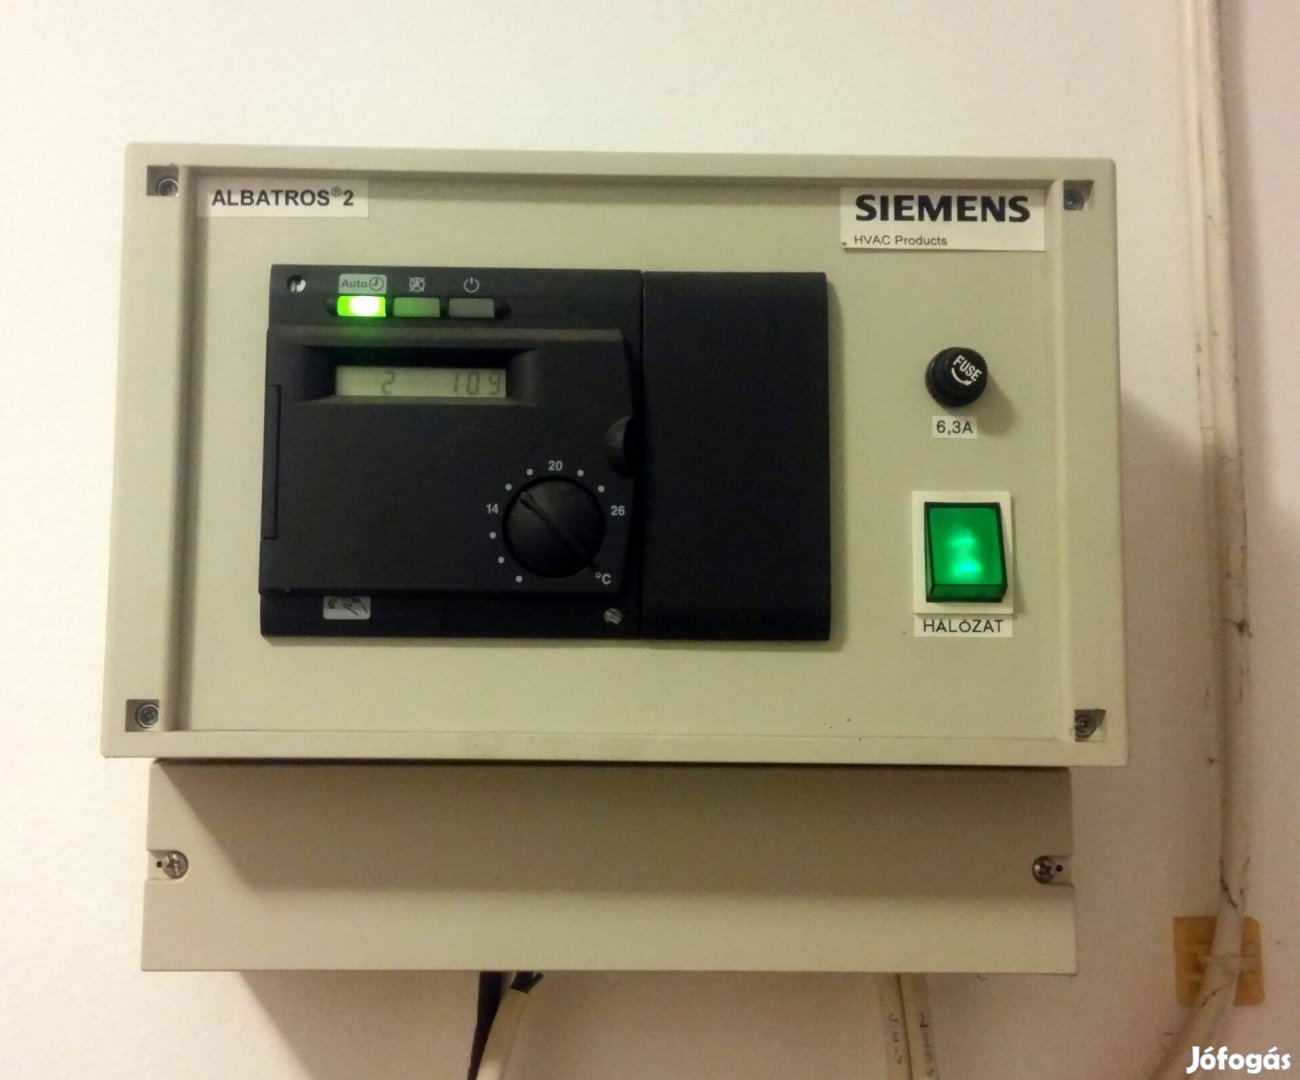 Siemens Albatrosz 2 eladó fűtésszabályzó vezérlő egység